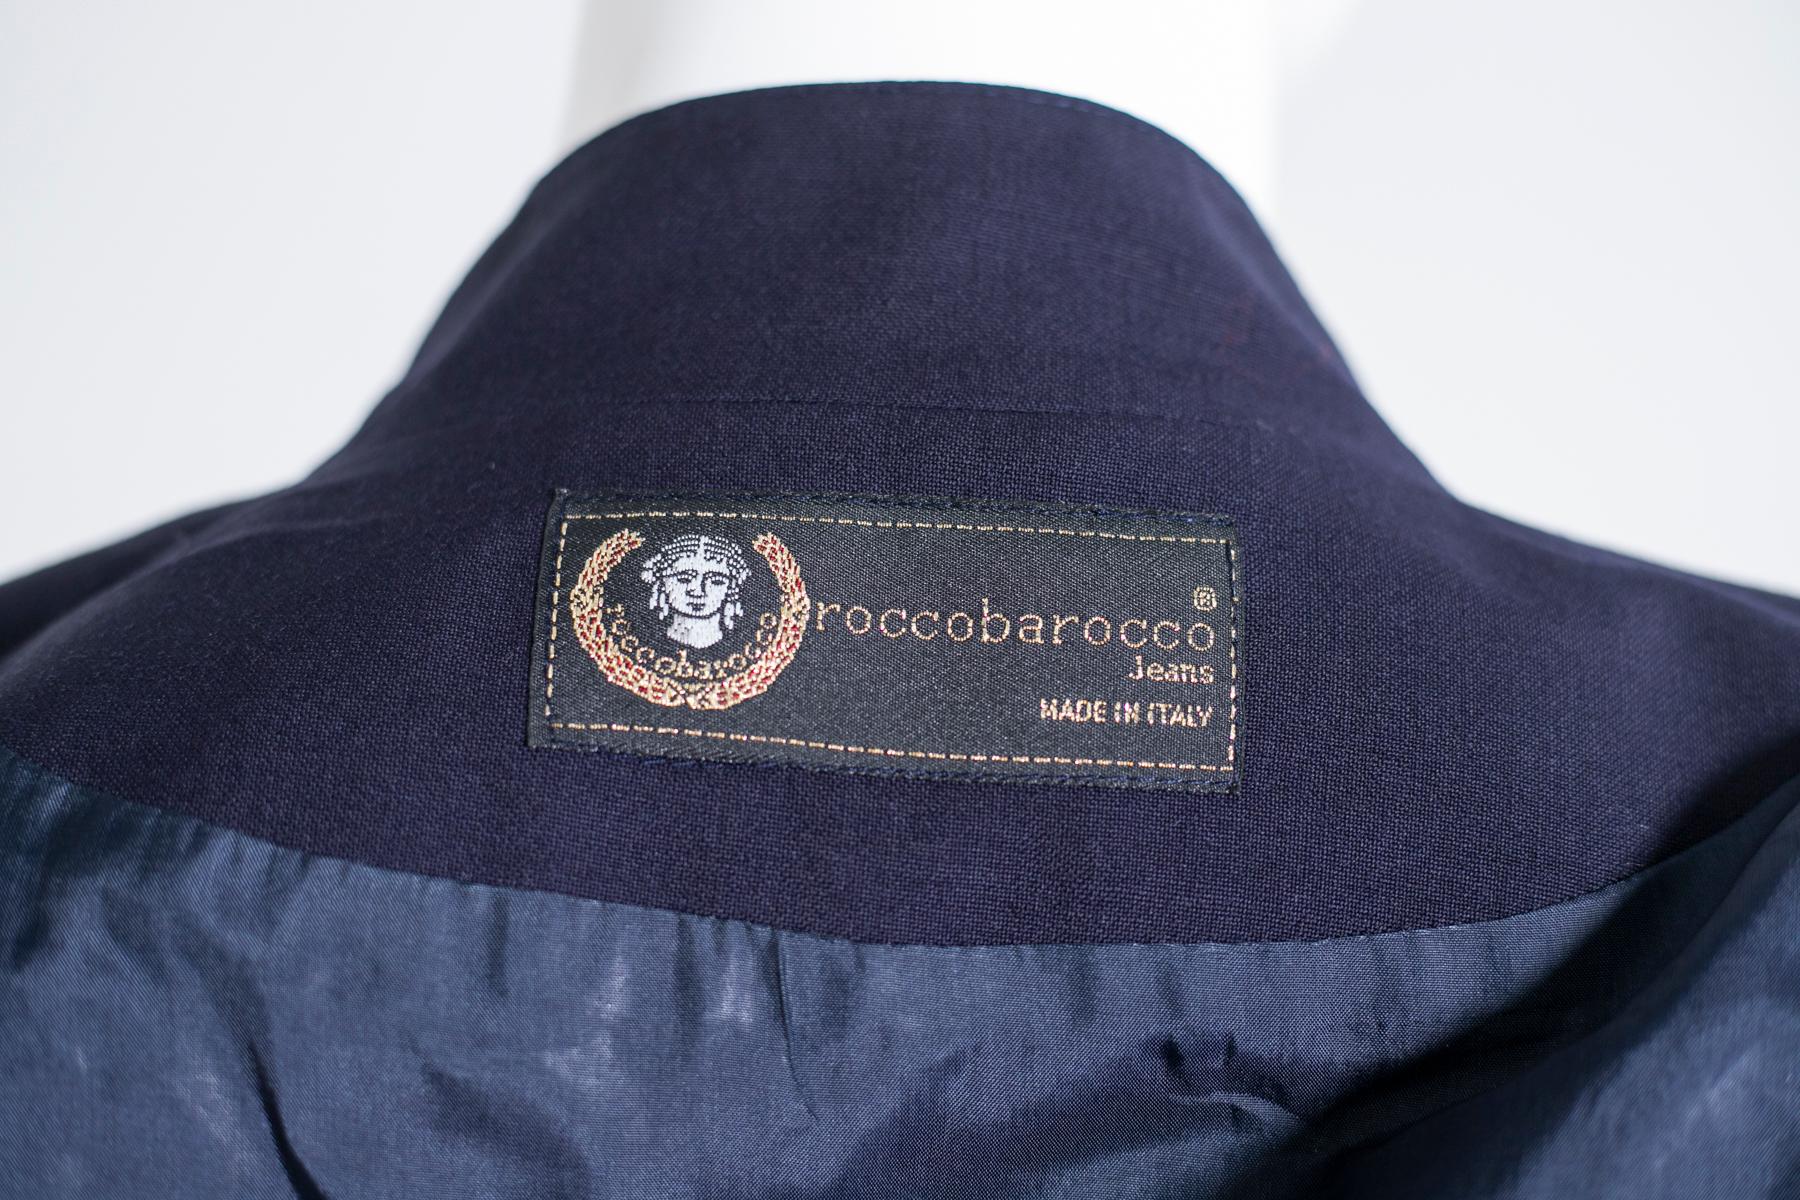 Belle veste courte bleu marine par Rocco Barocco Jeans. La veste est 100% laine et à l'intérieur se trouve l'étiquette Made in Italy. Ligne très élégante, rappelant les vestes des années 80 avec le rembourrage sur l'épaule. Sur le devant, le logo